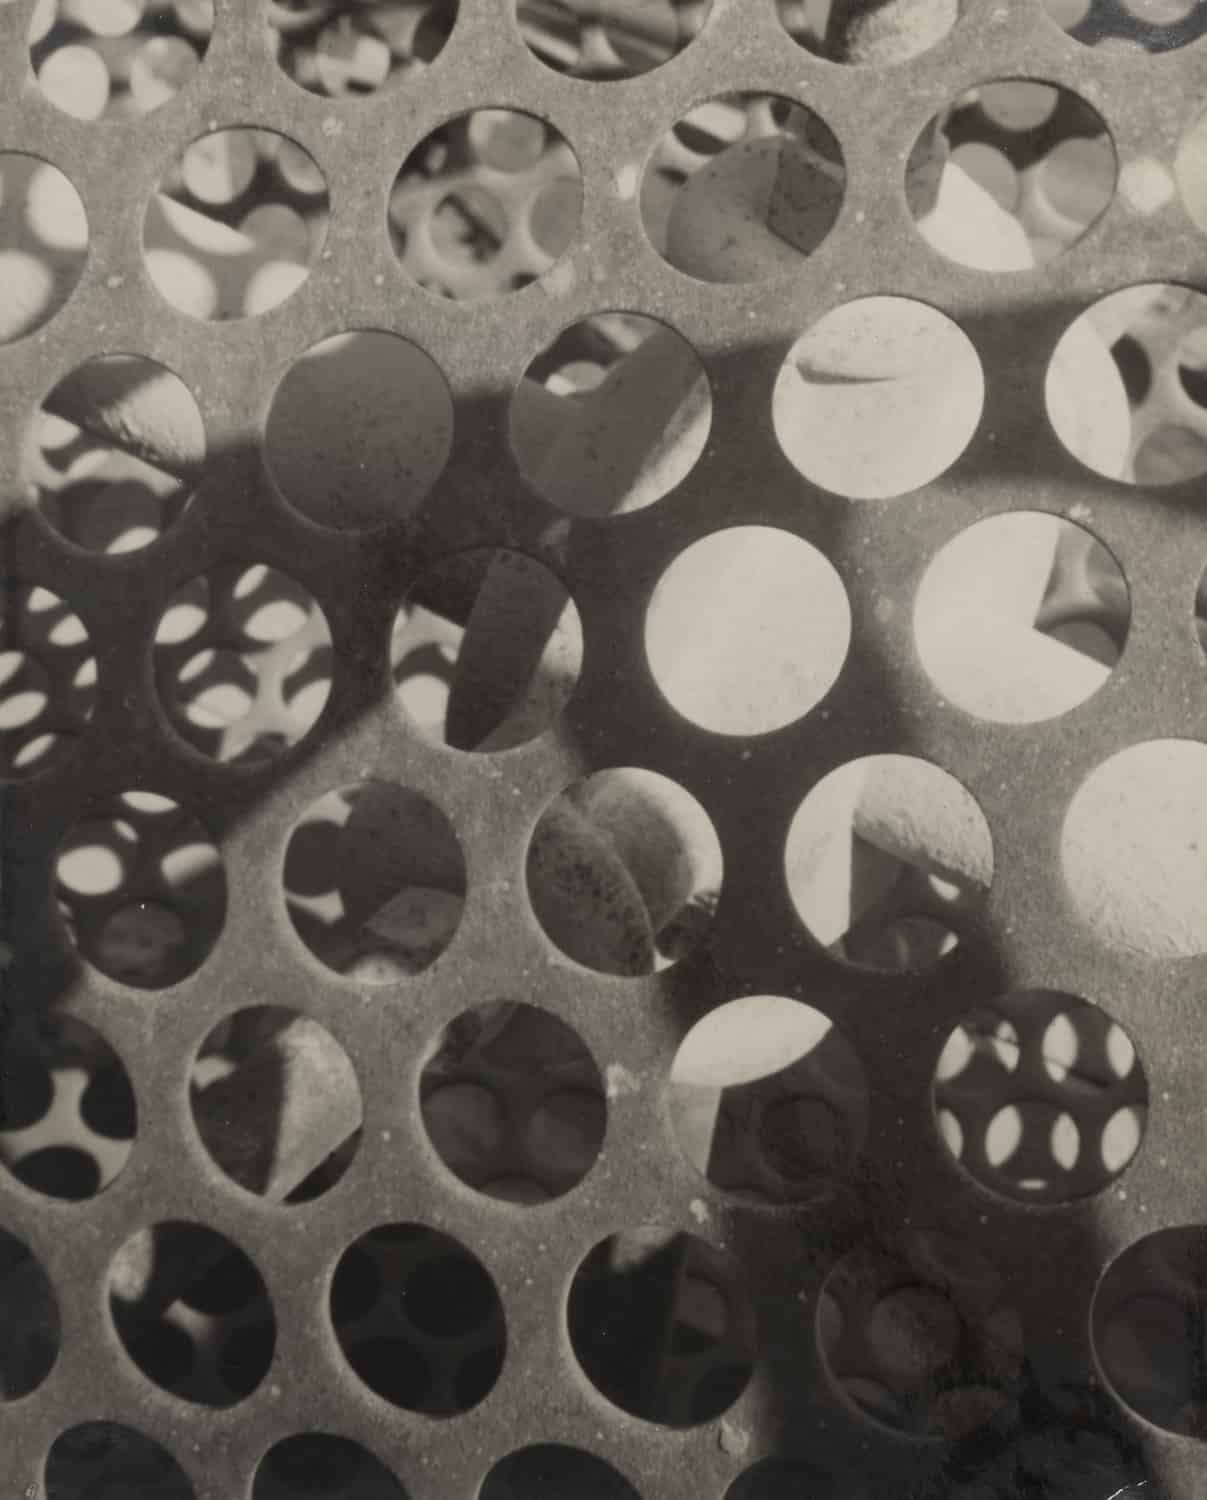 Jaromír Funke, Abstraction, 1928. Modern Objects, Huxley-Parlour Gallery, 3–5 Swallow St, London, W1B 4DE